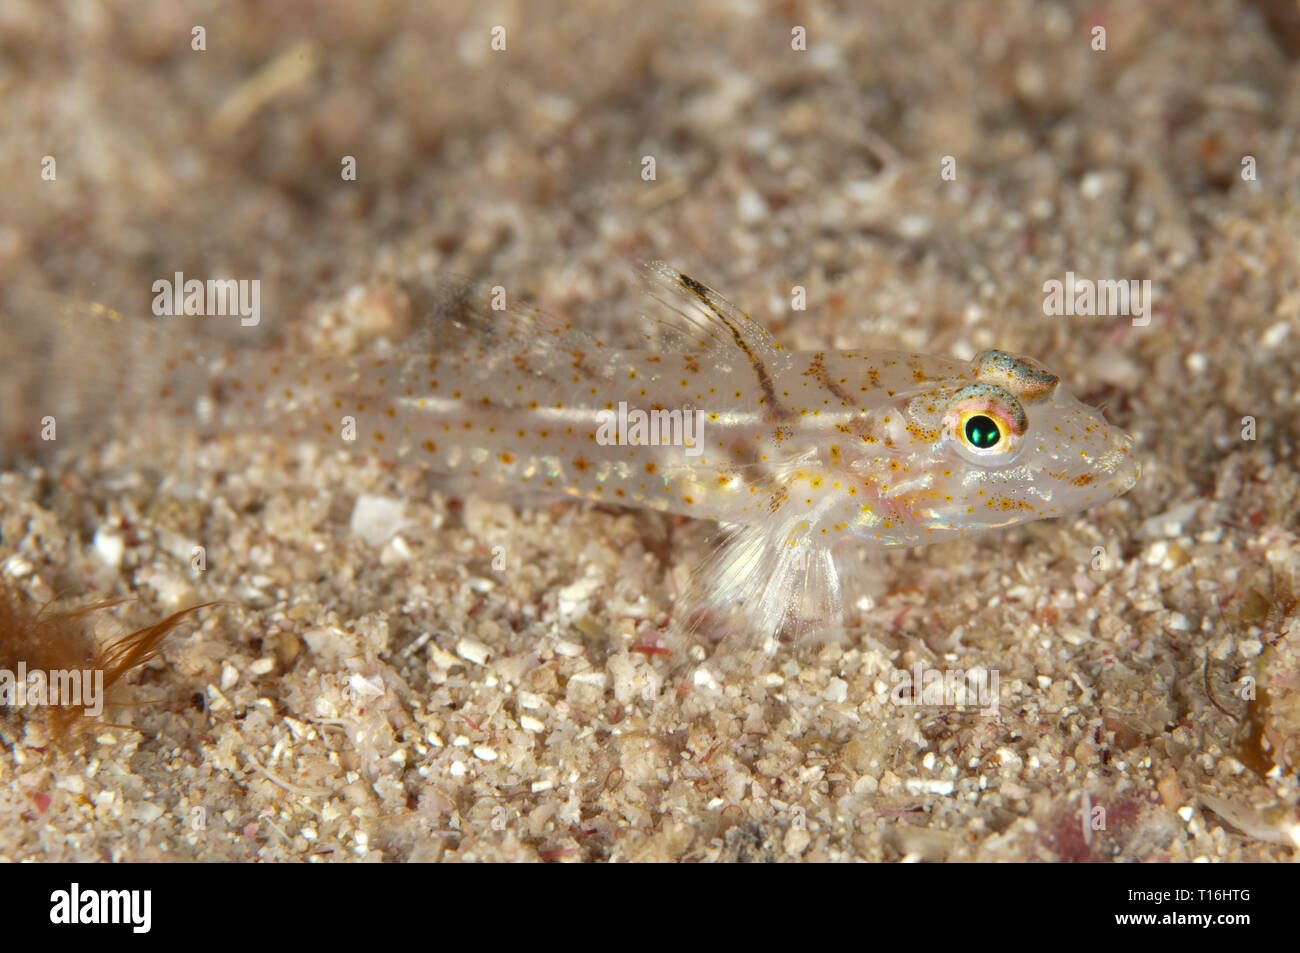 Néophyte Goby, Coryphopterus neophytus, sur le sable, site de plongée de Boo point, île de Boo, Raja Ampat, Papouasie occidentale, Indonésie Banque D'Images